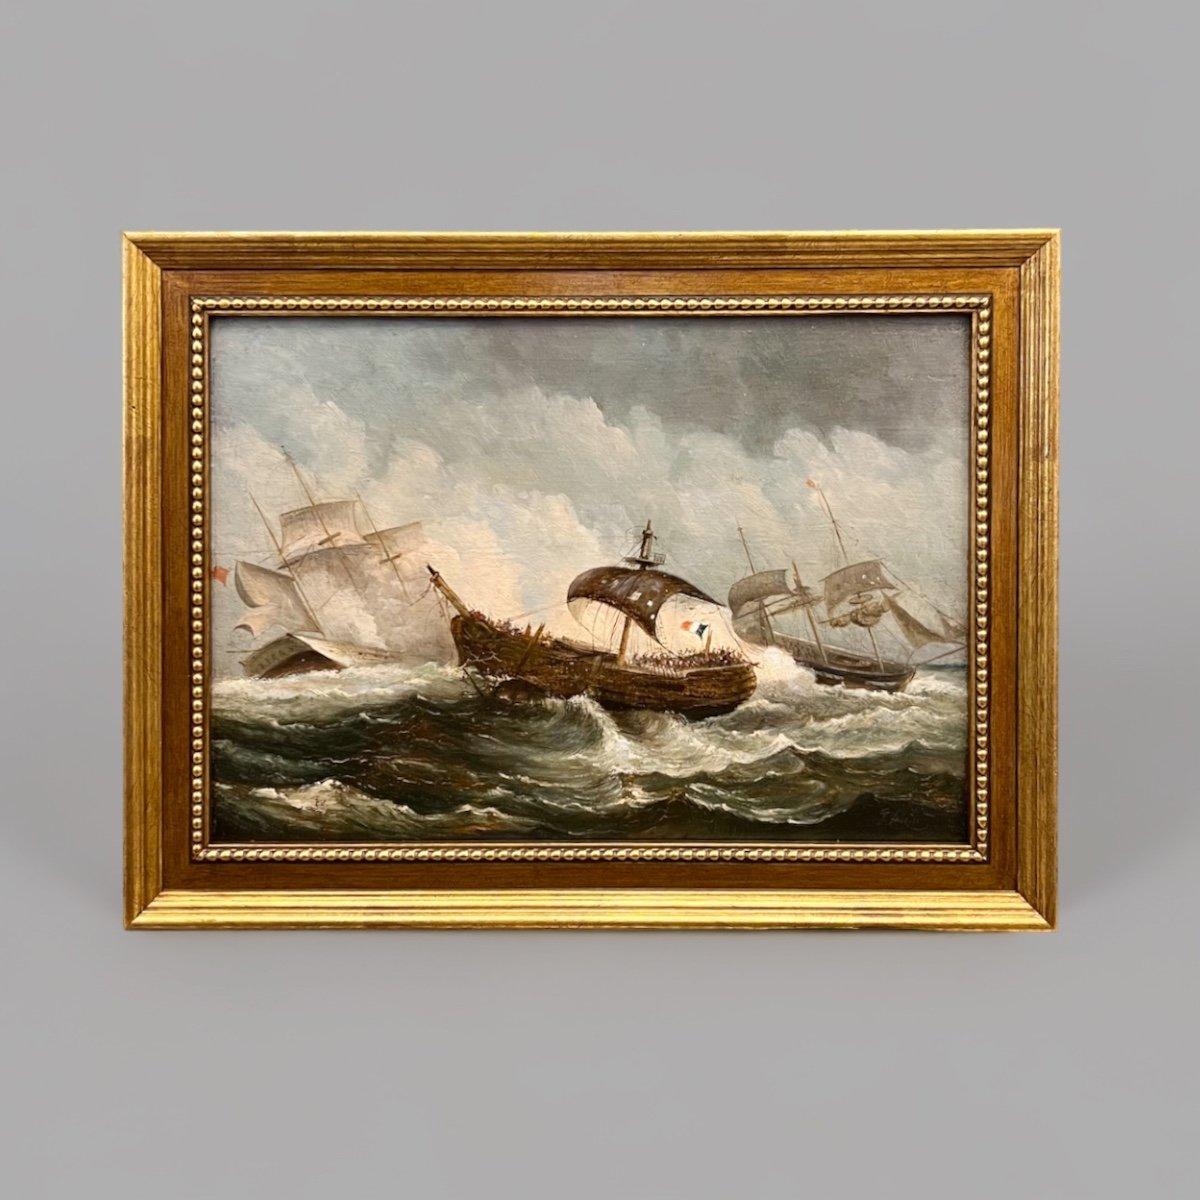 Dieses wunderbare Ölgemälde stellt eine schöne Komposition einer Seeschlacht dar, bei der ein französisches Schiff im Vordergrund zu sehen ist. Die verwendeten Farben und die grafische Dynamik des Bildes verleihen der Szene einen Hauch von